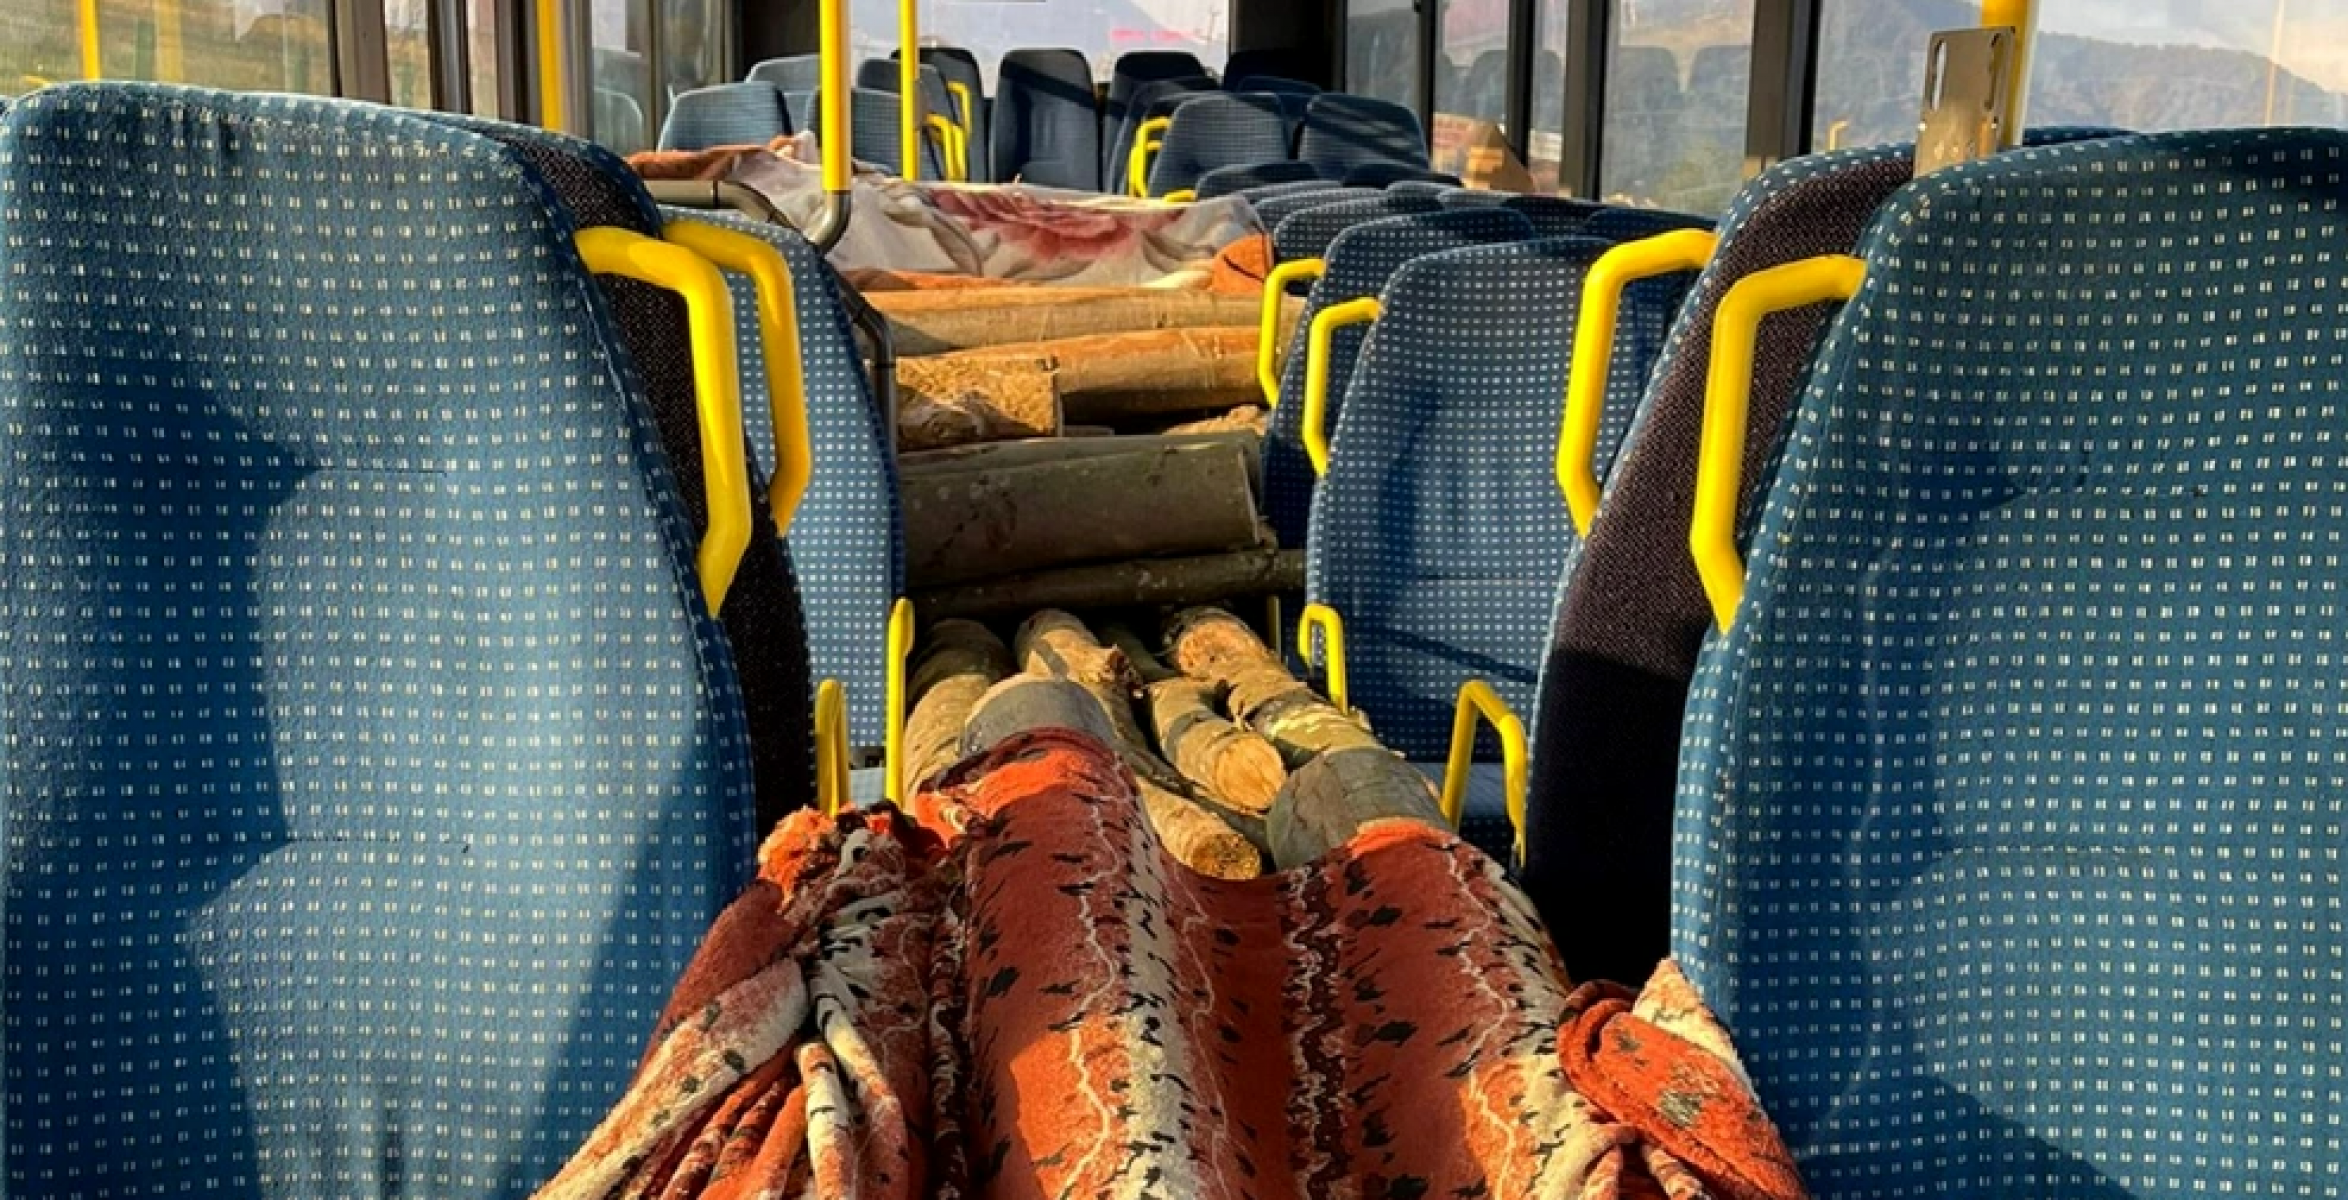 Ilyet még nem láttál: utasok helyett lopott tűzifa volt a buszban